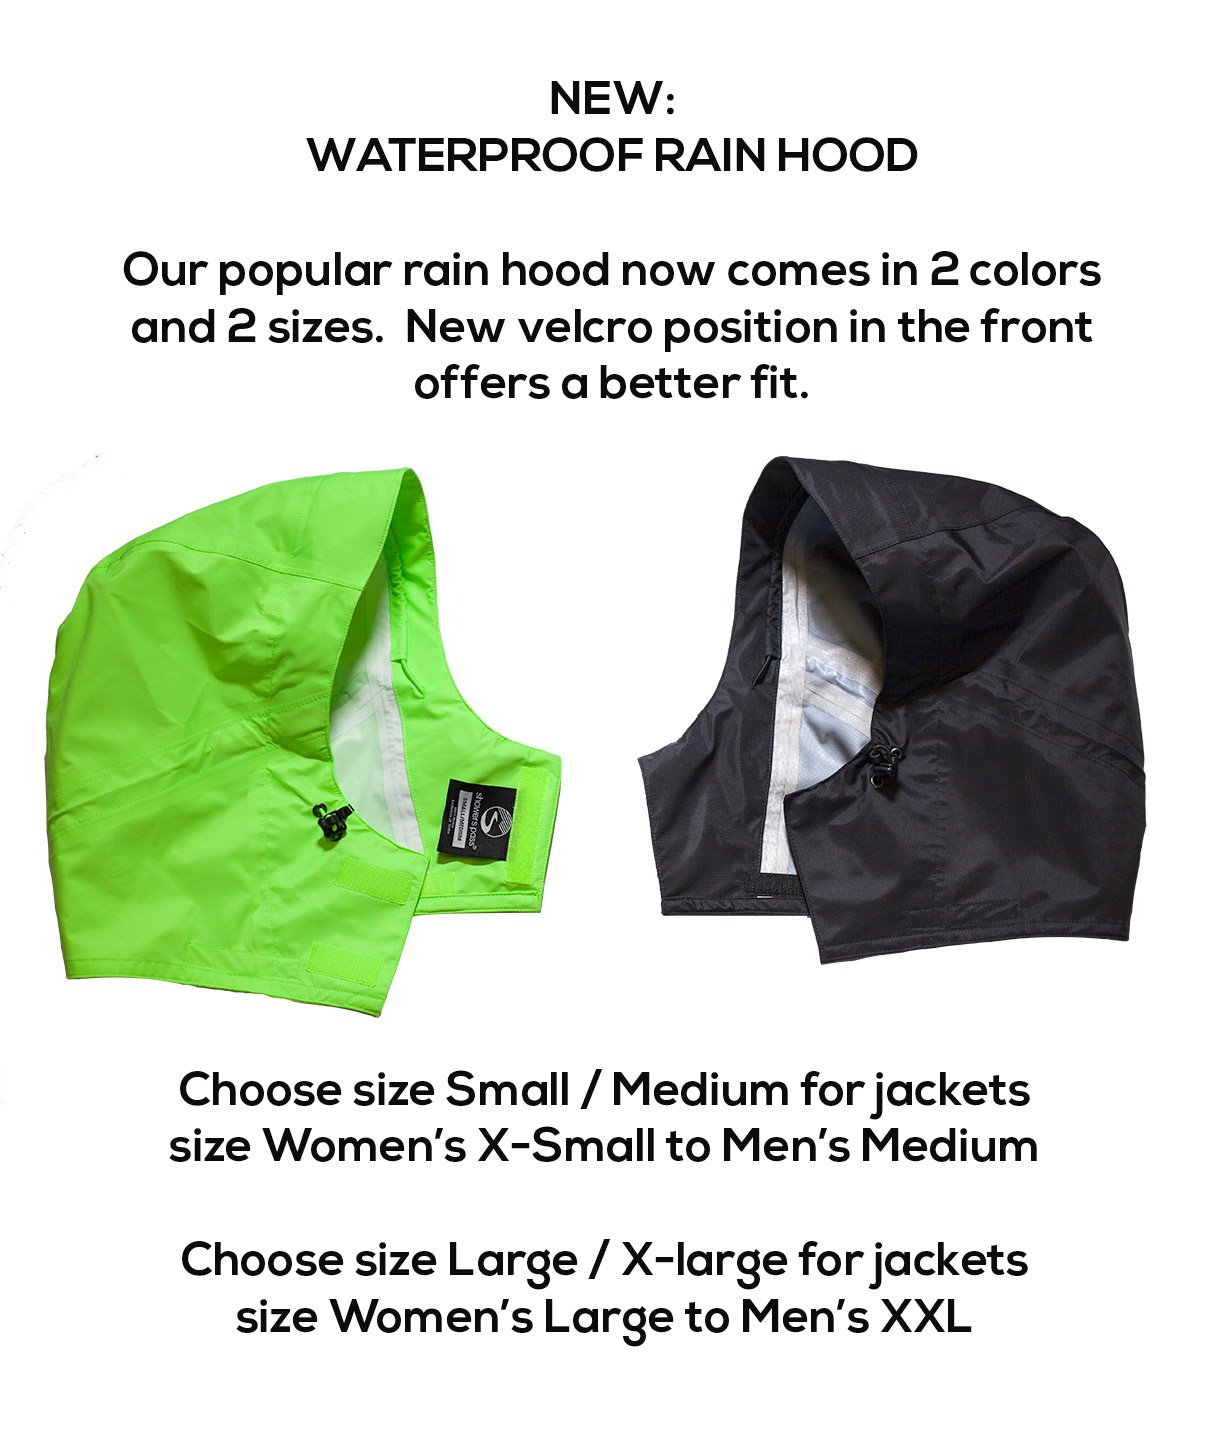 Waterproof Rain Hood